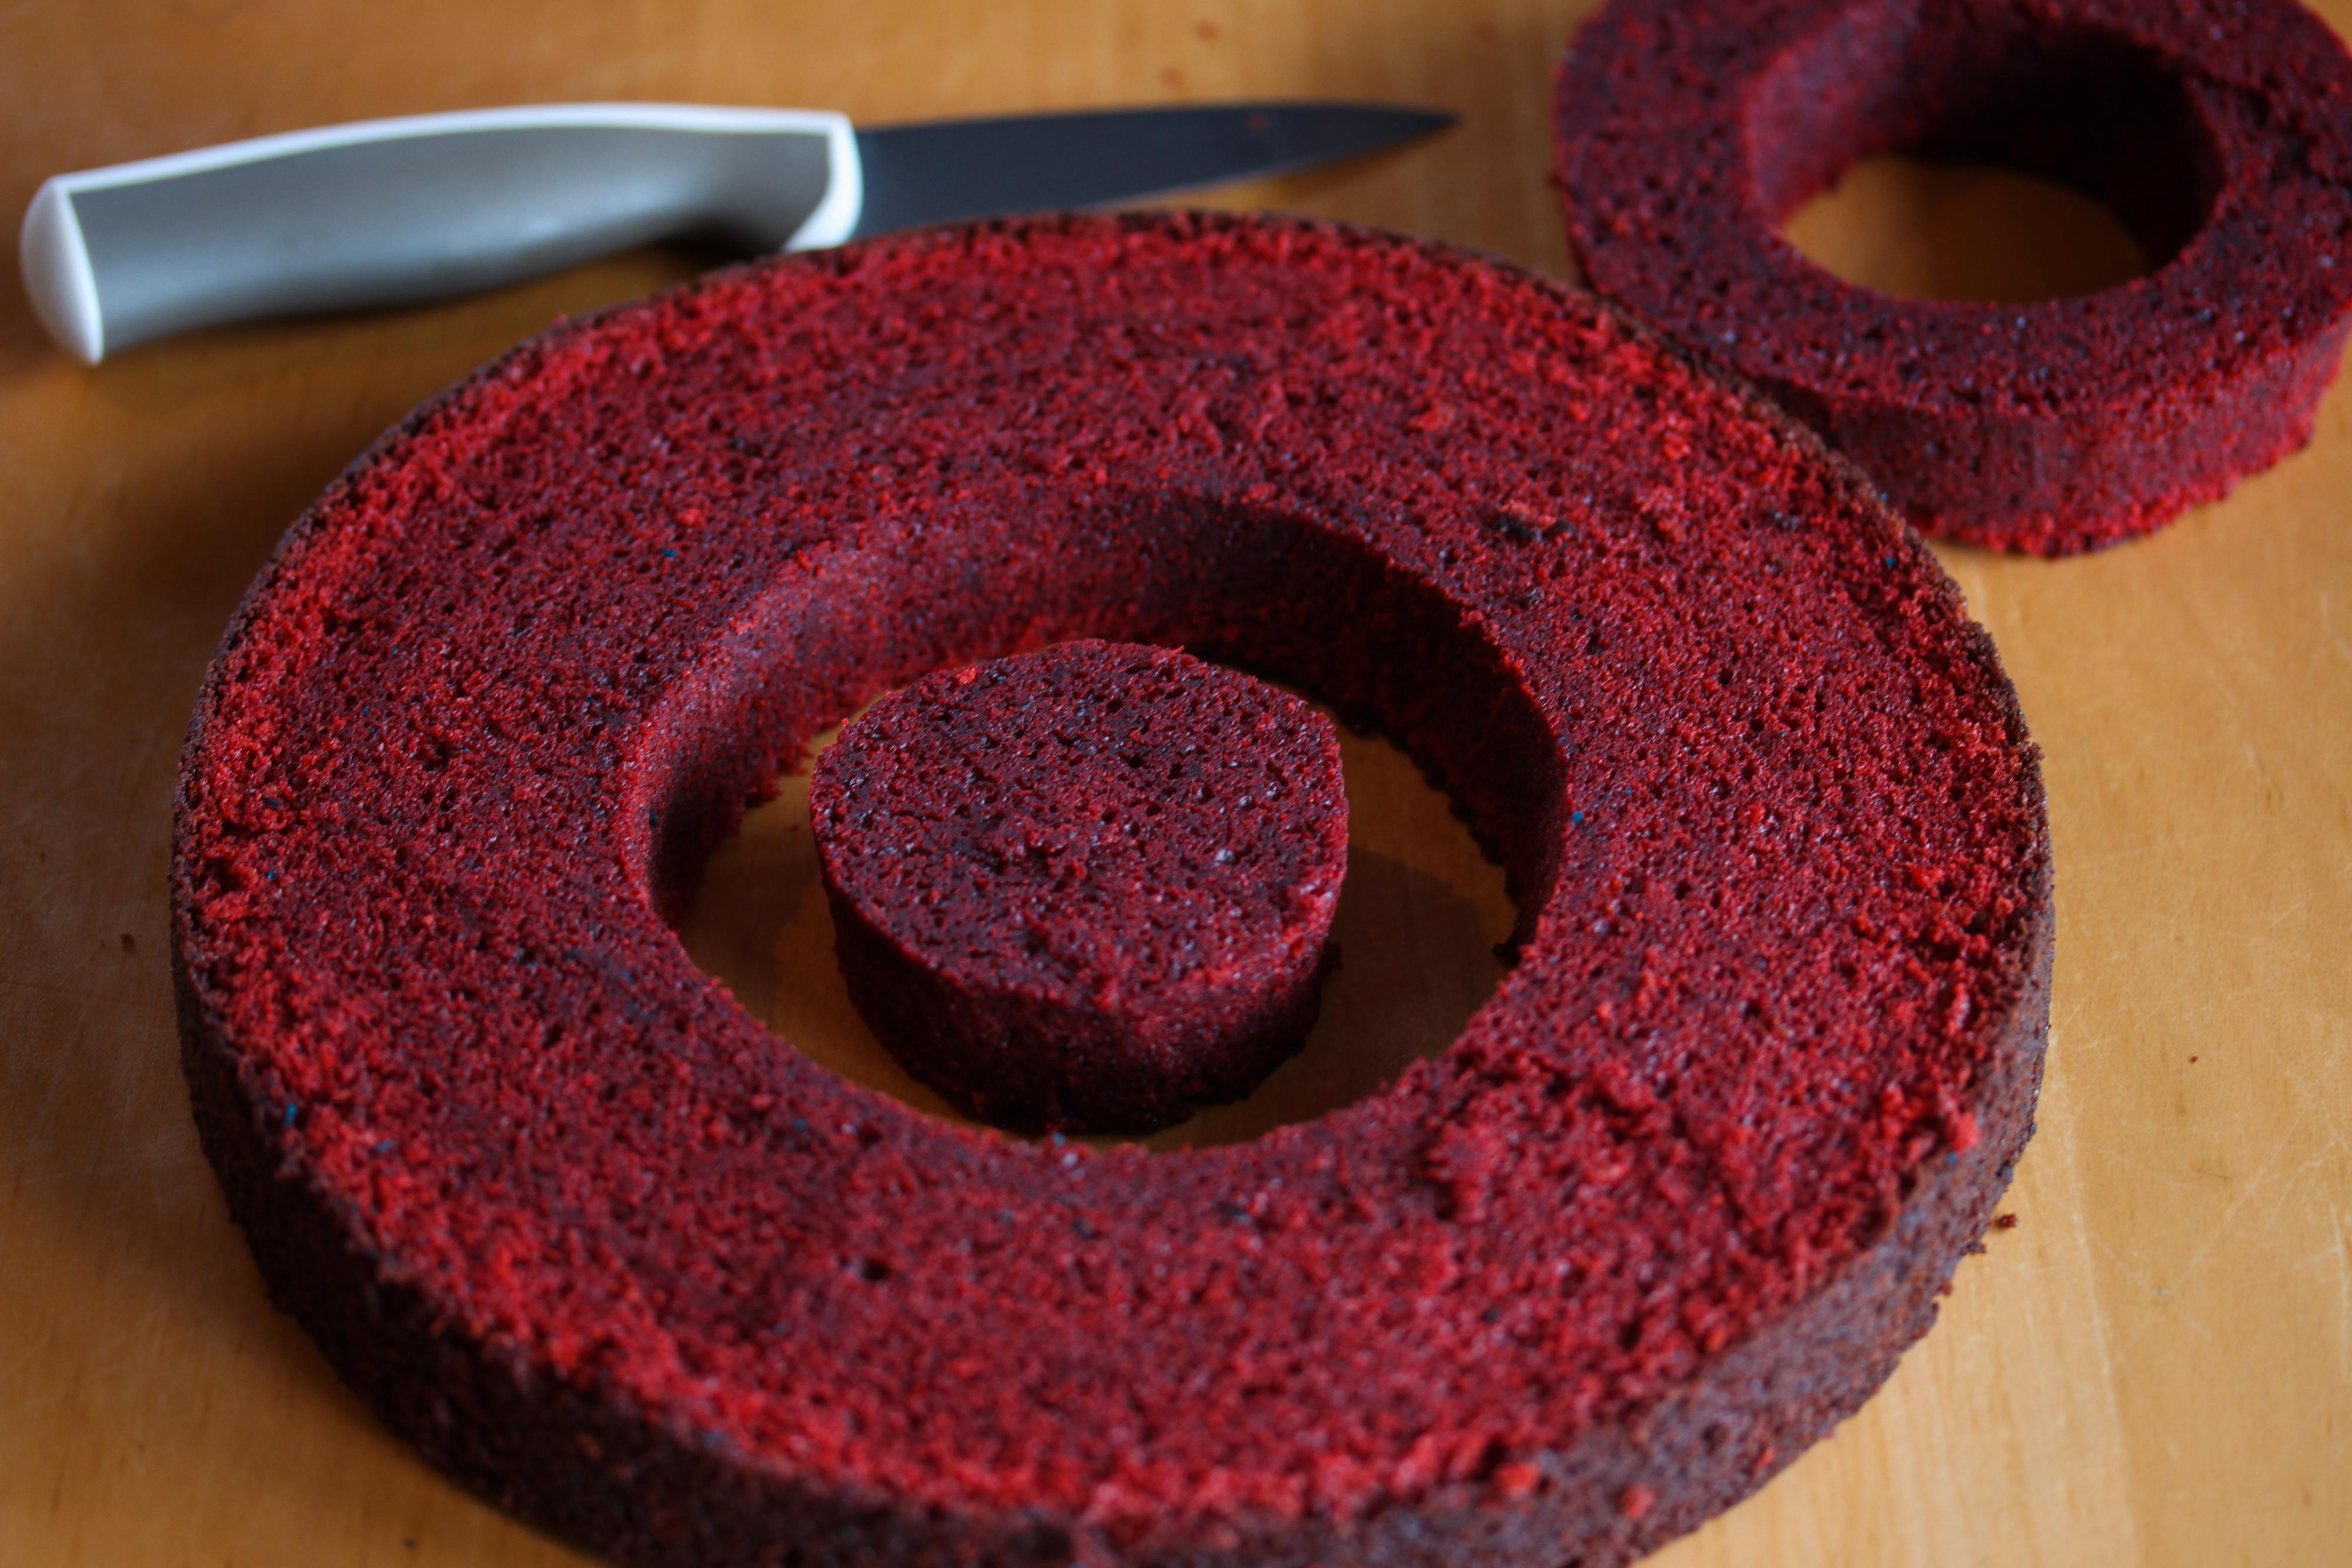 Sirklene som er 6 cm og 11 cm brukes til å beskjære de røde kakebunnene, slik at hver kakebunn består av en rød, indre sirkel som er 6 cm i diameter, og røde kakeringer med hulrom inni som måler 11 cm i diameter.